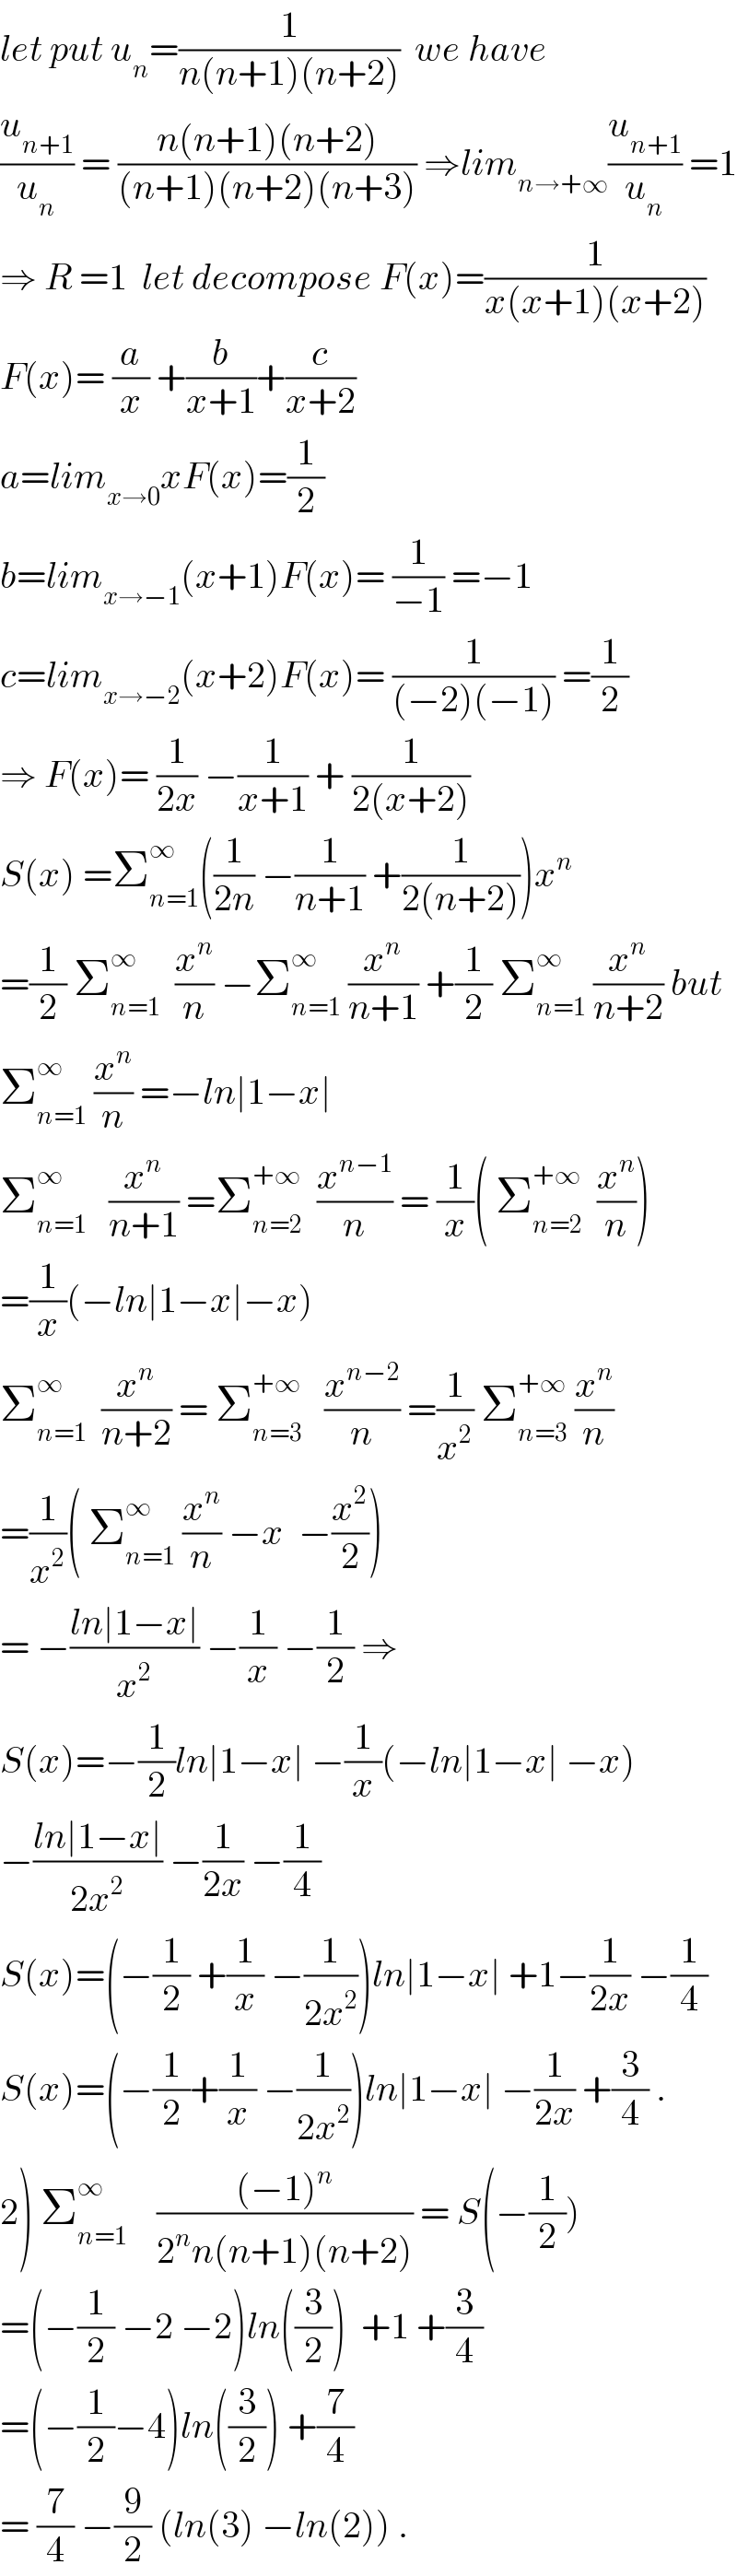 let put u_n =(1/(n(n+1)(n+2)))  we have  (u_(n+1) /u_n ) = ((n(n+1)(n+2))/((n+1)(n+2)(n+3))) ⇒lim_(n→+∞) (u_(n+1) /u_n ) =1  ⇒ R =1  let decompose F(x)=(1/(x(x+1)(x+2)))  F(x)= (a/x) +(b/(x+1))+(c/(x+2))  a=lim_(x→0) xF(x)=(1/2)  b=lim_(x→−1) (x+1)F(x)= (1/(−1)) =−1  c=lim_(x→−2) (x+2)F(x)= (1/((−2)(−1))) =(1/2)  ⇒ F(x)= (1/(2x)) −(1/(x+1)) + (1/(2(x+2)))  S(x) =Σ_(n=1) ^∞ ((1/(2n)) −(1/(n+1)) +(1/(2(n+2))))x^n   =(1/2) Σ_(n=1) ^∞   (x^n /n) −Σ_(n=1) ^∞  (x^n /(n+1)) +(1/2) Σ_(n=1) ^∞  (x^n /(n+2)) but  Σ_(n=1) ^∞  (x^n /n) =−ln∣1−x∣  Σ_(n=1) ^∞    (x^n /(n+1)) =Σ_(n=2) ^(+∞)   (x^(n−1) /n) = (1/x)( Σ_(n=2) ^(+∞)   (x^n /n))  =(1/x)(−ln∣1−x∣−x)  Σ_(n=1) ^∞   (x^n /(n+2)) = Σ_(n=3) ^(+∞)    (x^(n−2) /n) =(1/x^2 ) Σ_(n=3) ^(+∞)  (x^n /n)  =(1/x^2 )( Σ_(n=1) ^∞  (x^n /n) −x  −(x^2 /2))  = −((ln∣1−x∣)/x^2 ) −(1/x) −(1/2) ⇒  S(x)=−(1/2)ln∣1−x∣ −(1/x)(−ln∣1−x∣ −x)  −((ln∣1−x∣)/(2x^2 )) −(1/(2x)) −(1/4)  S(x)=(−(1/2) +(1/x) −(1/(2x^2 )))ln∣1−x∣ +1−(1/(2x)) −(1/4)  S(x)=(−(1/2)+(1/x) −(1/(2x^2 )))ln∣1−x∣ −(1/(2x)) +(3/4) .  2) Σ_(n=1) ^∞     (((−1)^n )/(2^n n(n+1)(n+2))) = S(−(1/2))  =(−(1/2) −2 −2)ln((3/2))  +1 +(3/4)  =(−(1/2)−4)ln((3/2)) +(7/4)  = (7/4) −(9/2) (ln(3) −ln(2)) .  